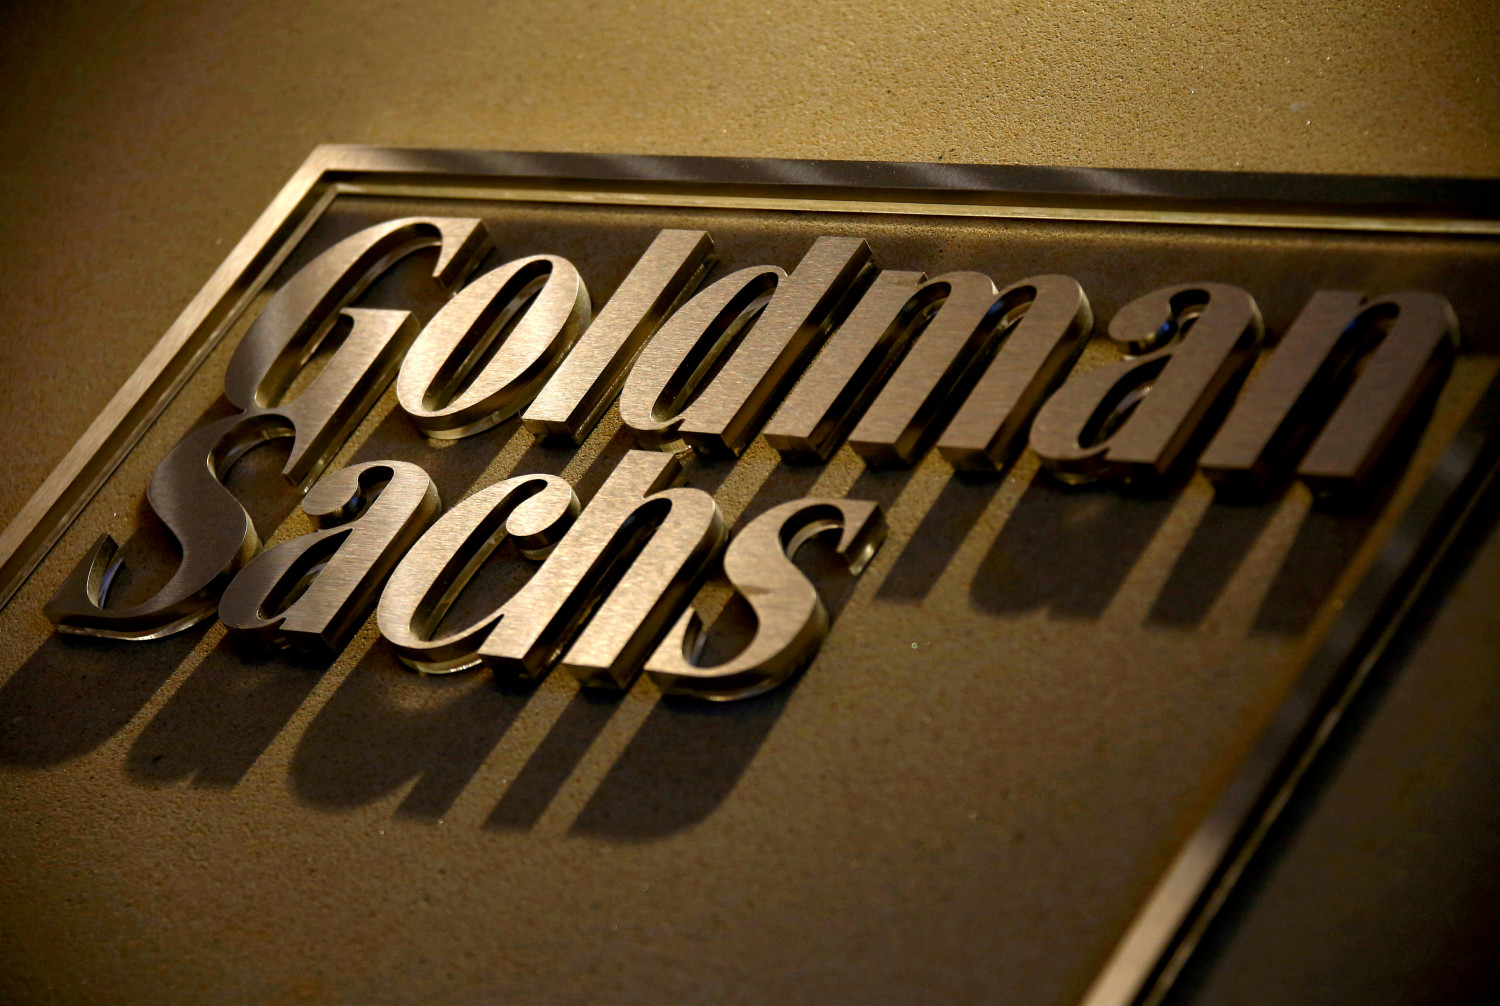 goldman sachs veut investir 10 milliards de dollars sur 10 ans pour soutenir les femmes noires 